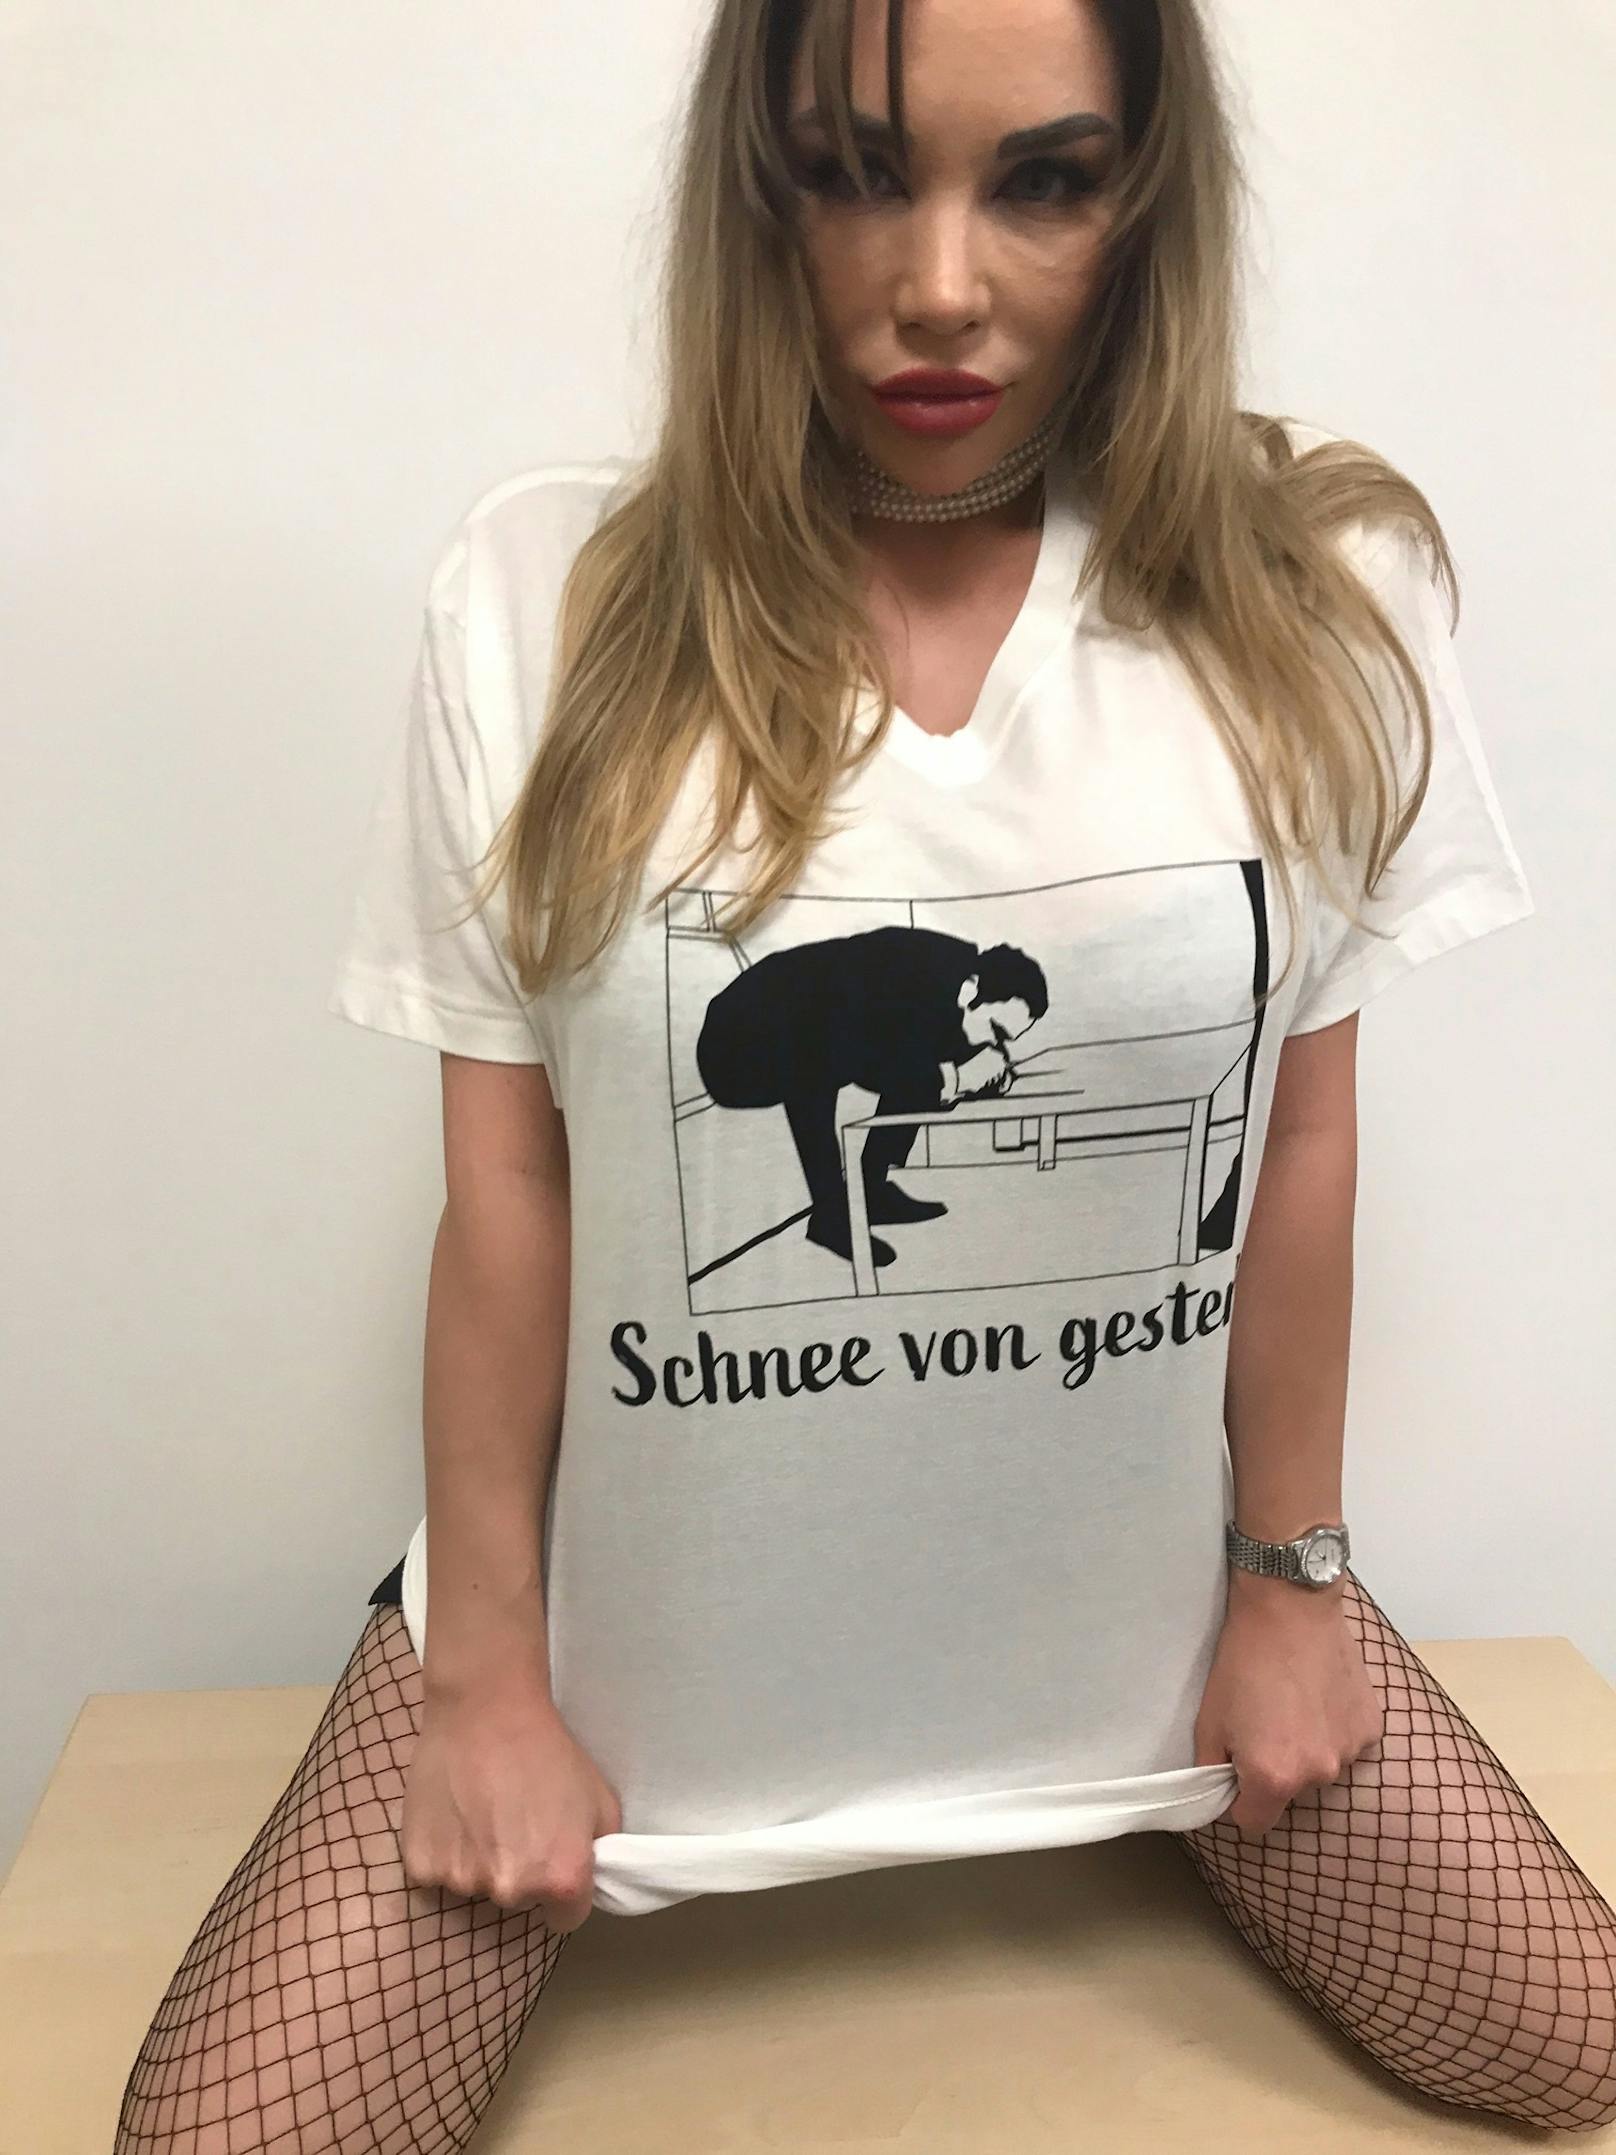 Lugner-Stripperin Candice posiert in Gudenus-Shirts und sorgt damit für Aufregung.